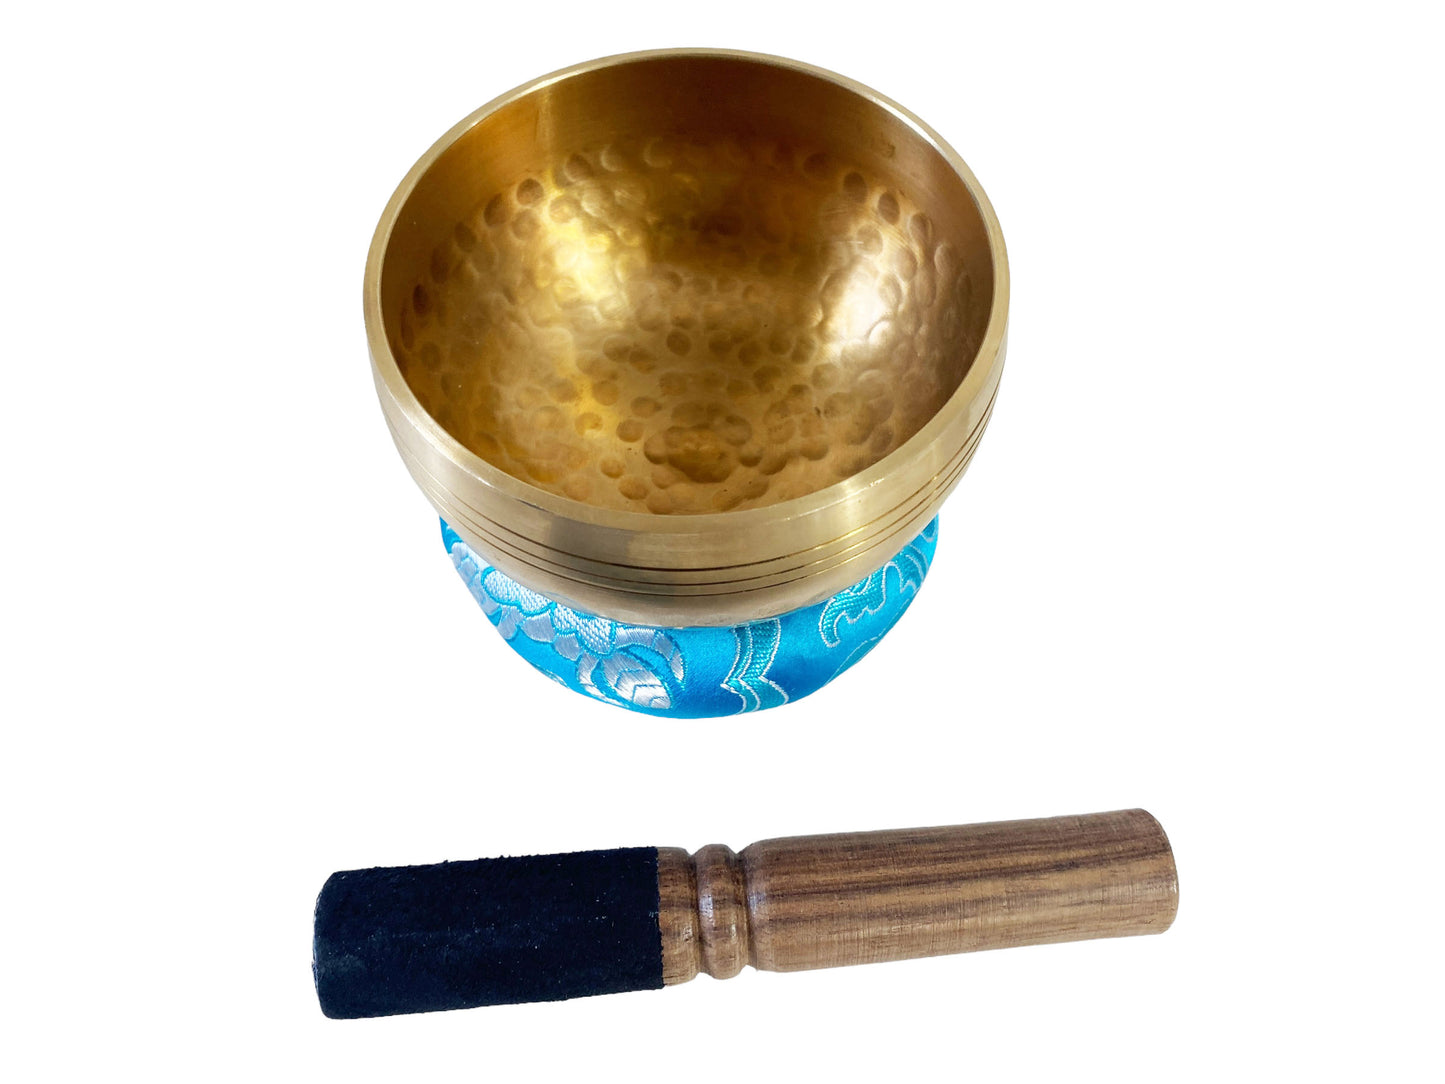 #5882 Chakra Healing Tibetan Singing Bowl 3.5" Diameter